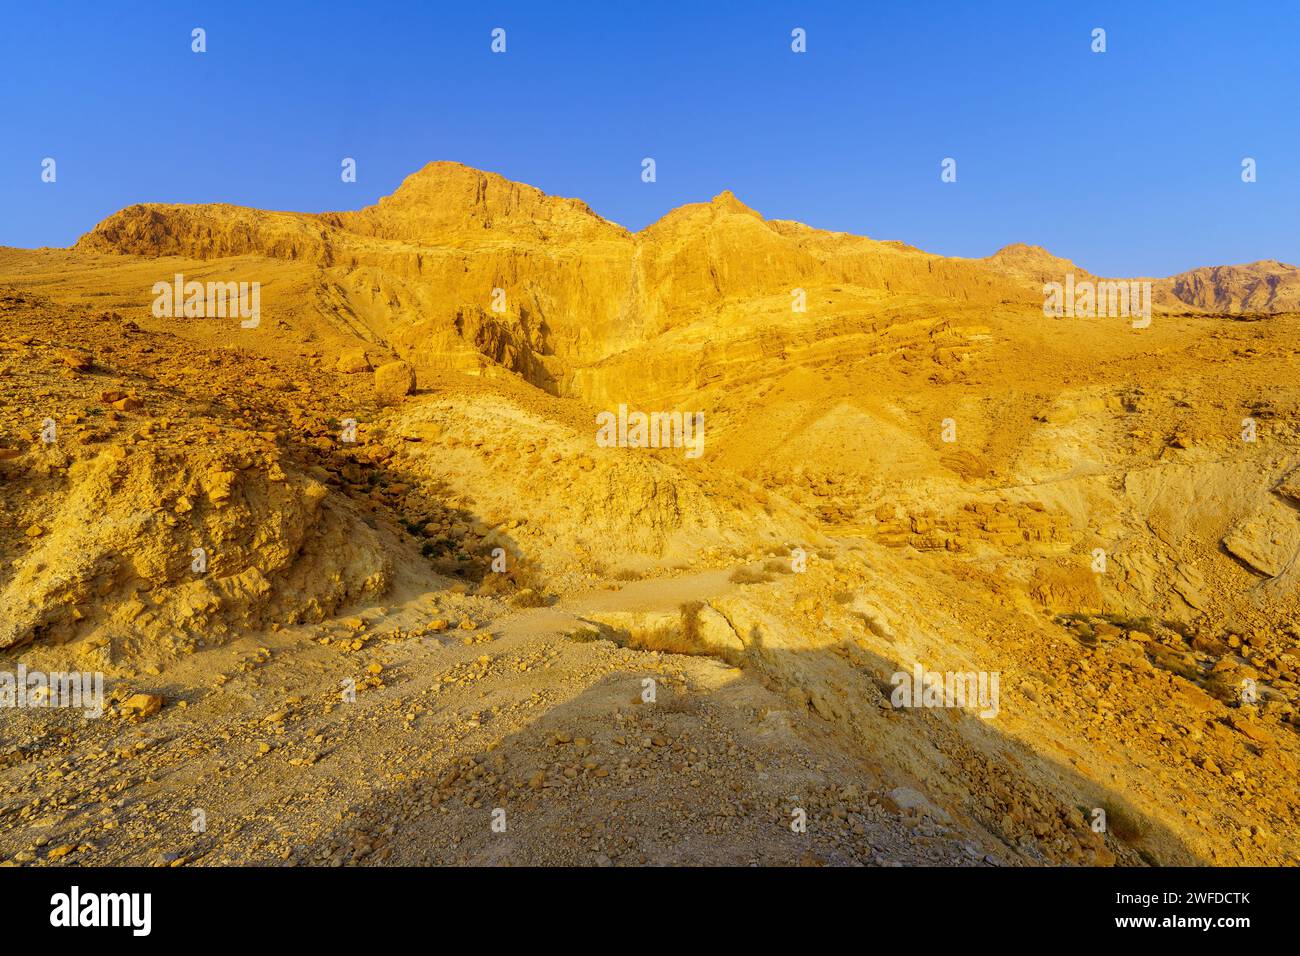 Vue sur le paysage désertique et un sentier pédestre dans la vallée de Salvadora (oued, lit de rivière), sur la côte de la mer Morte, désert de Judée, sud d'Israël Banque D'Images